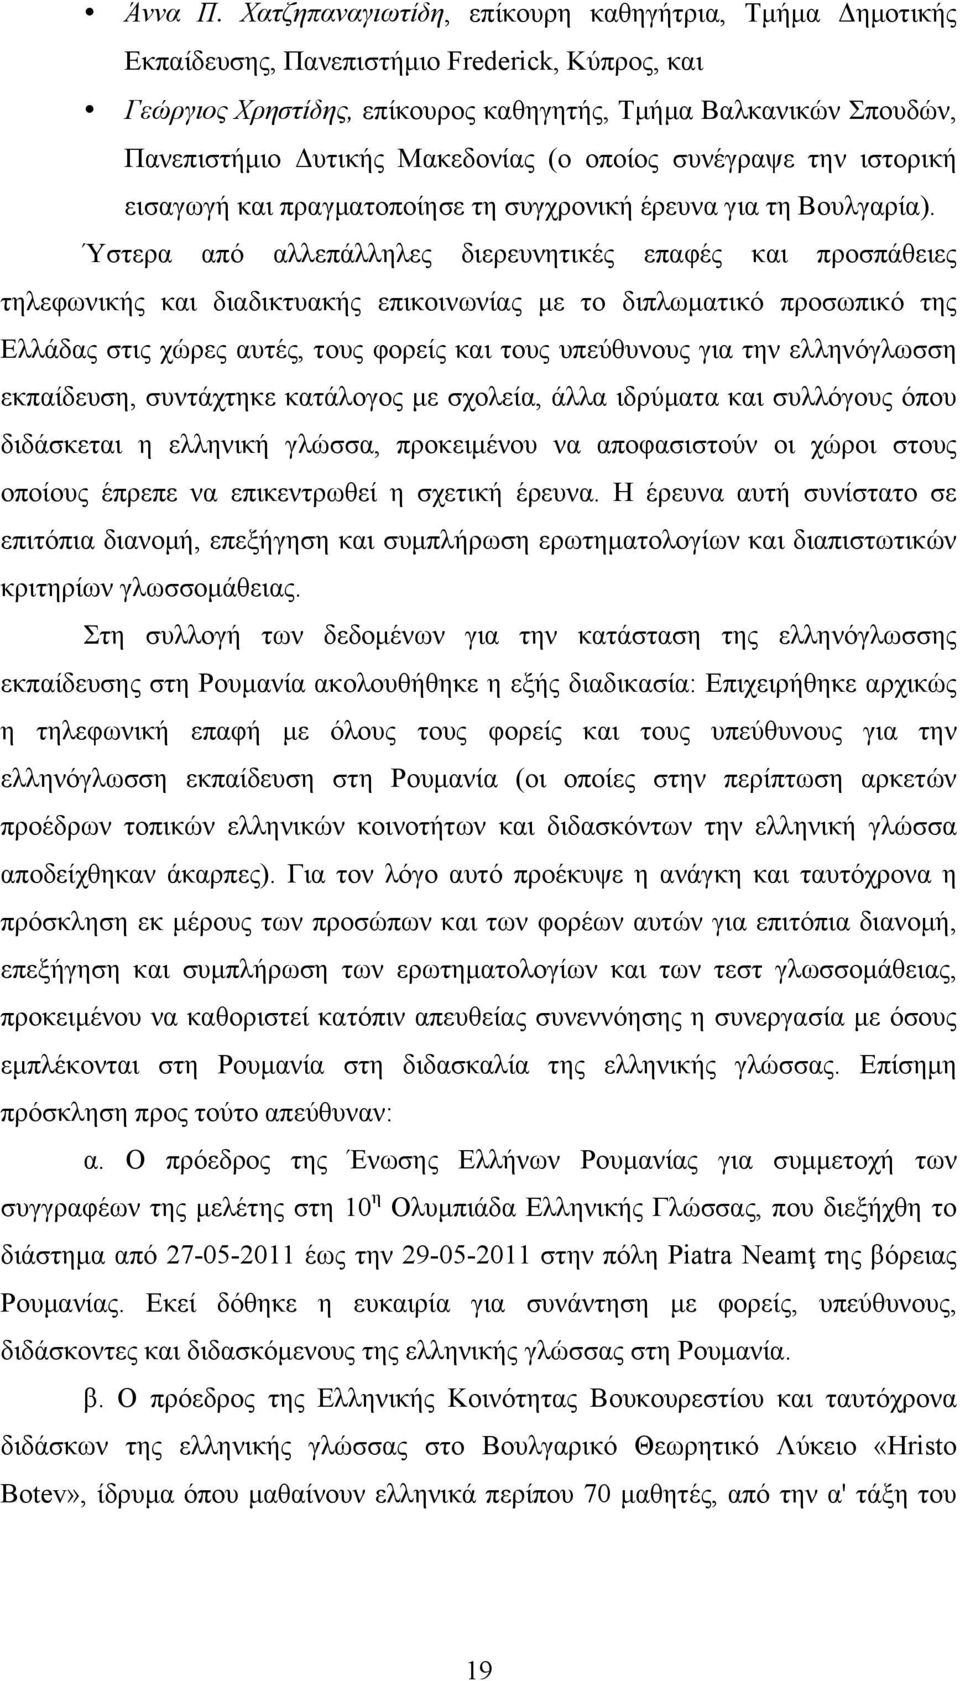 Μακεδονίας (ο οποίος συνέγραψε την ιστορική εισαγωγή και πραγµατοποίησε τη συγχρονική έρευνα για τη Βουλγαρία).